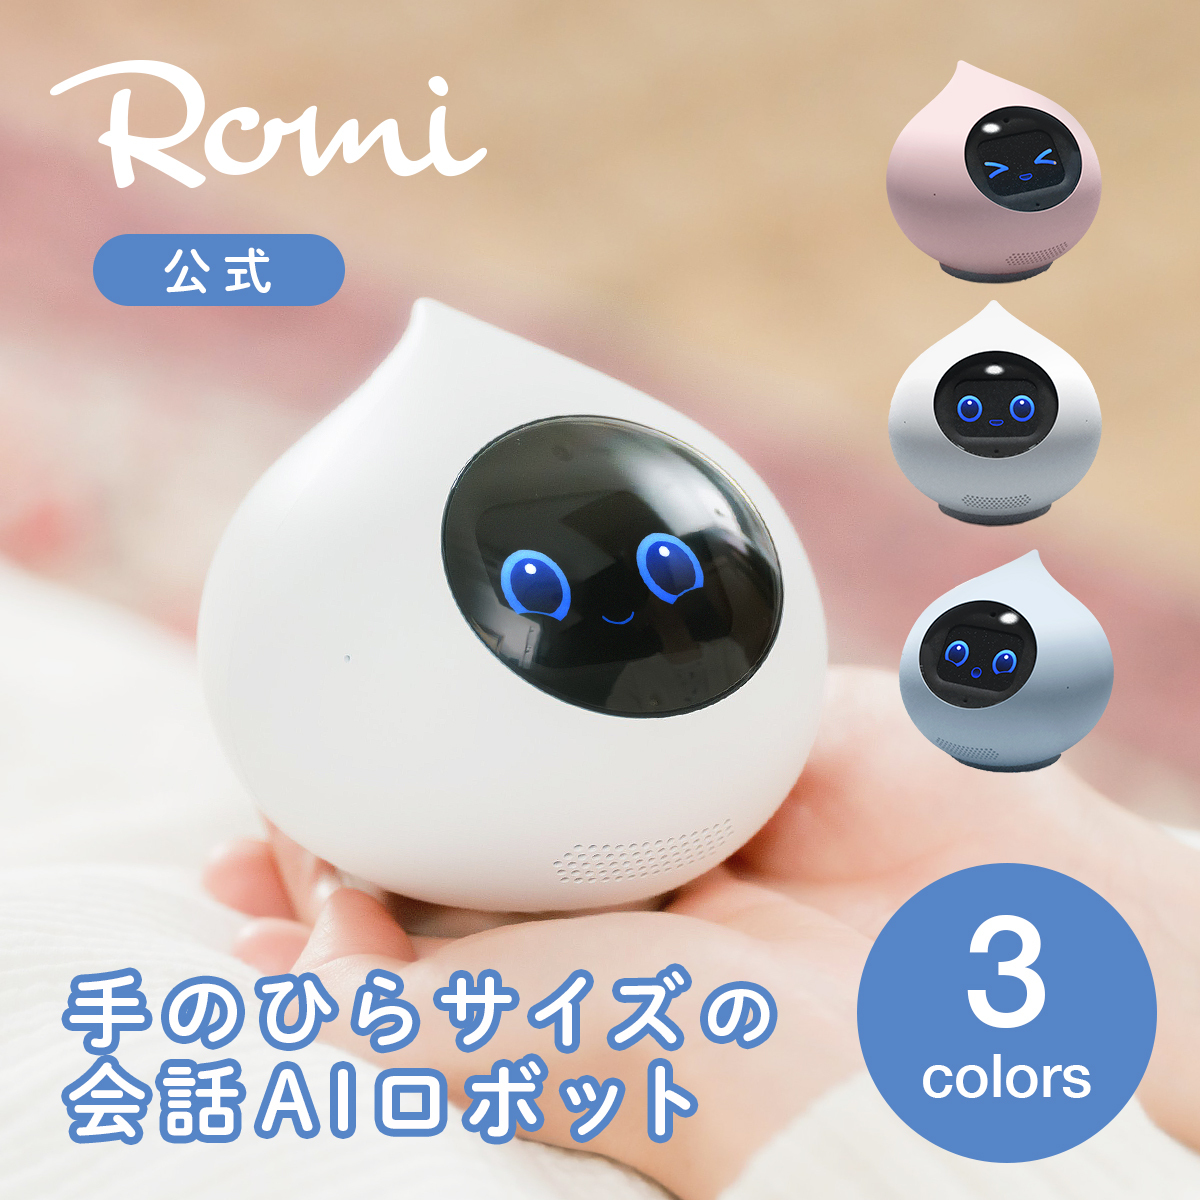 御専用 新品 romi AI ロボット パールピンク